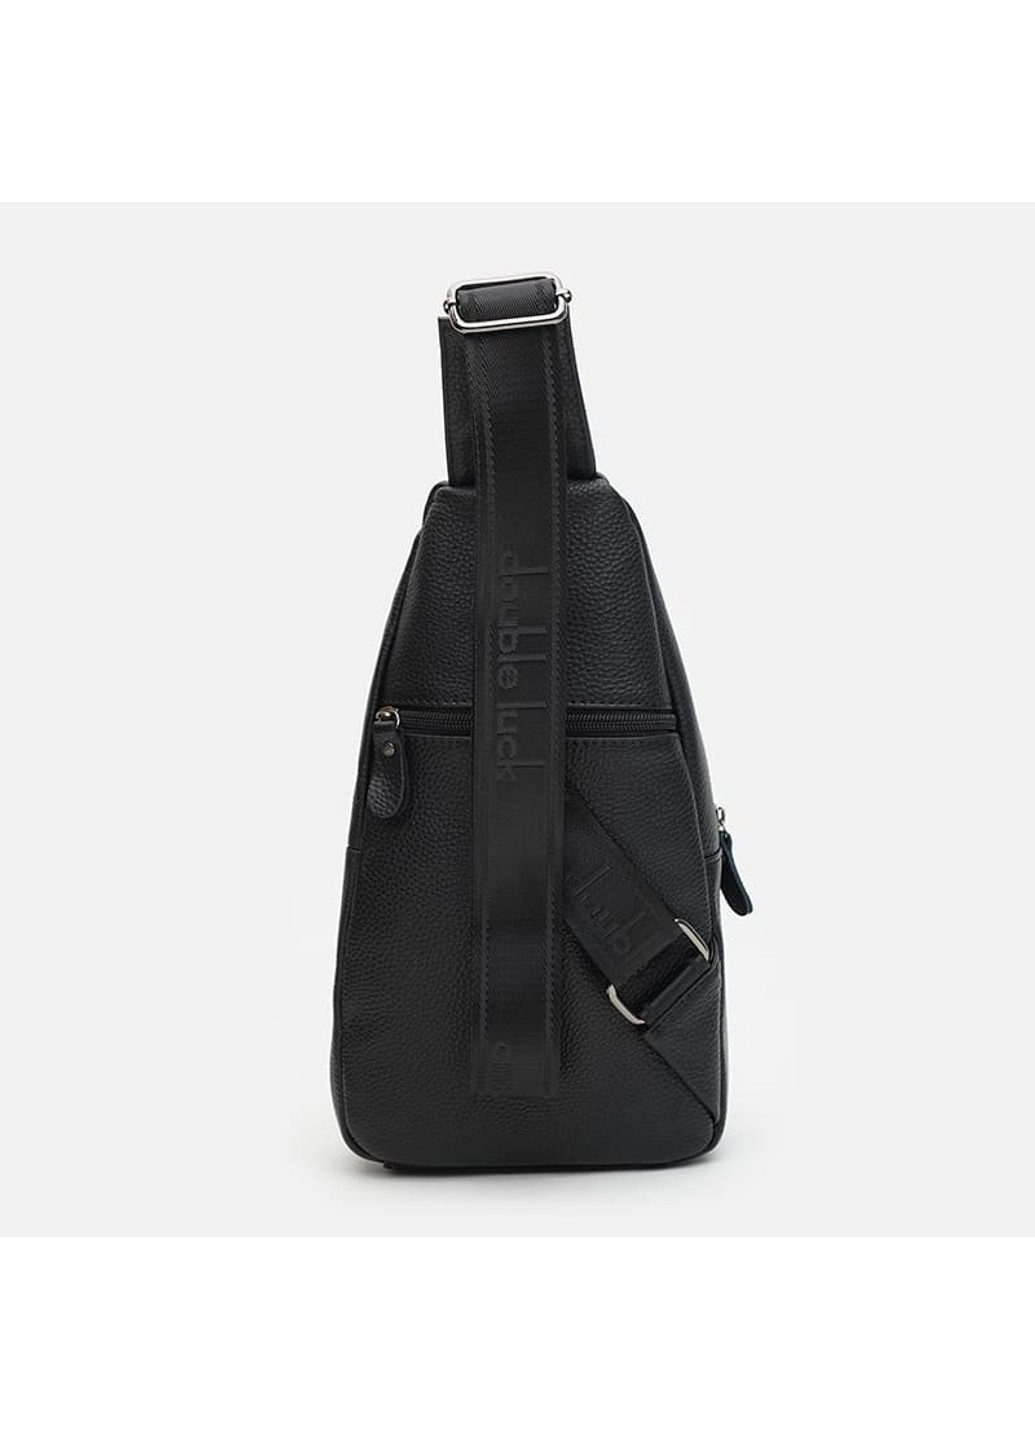 Мужская кожаная сумка K14039bl-black Keizer (266143485)